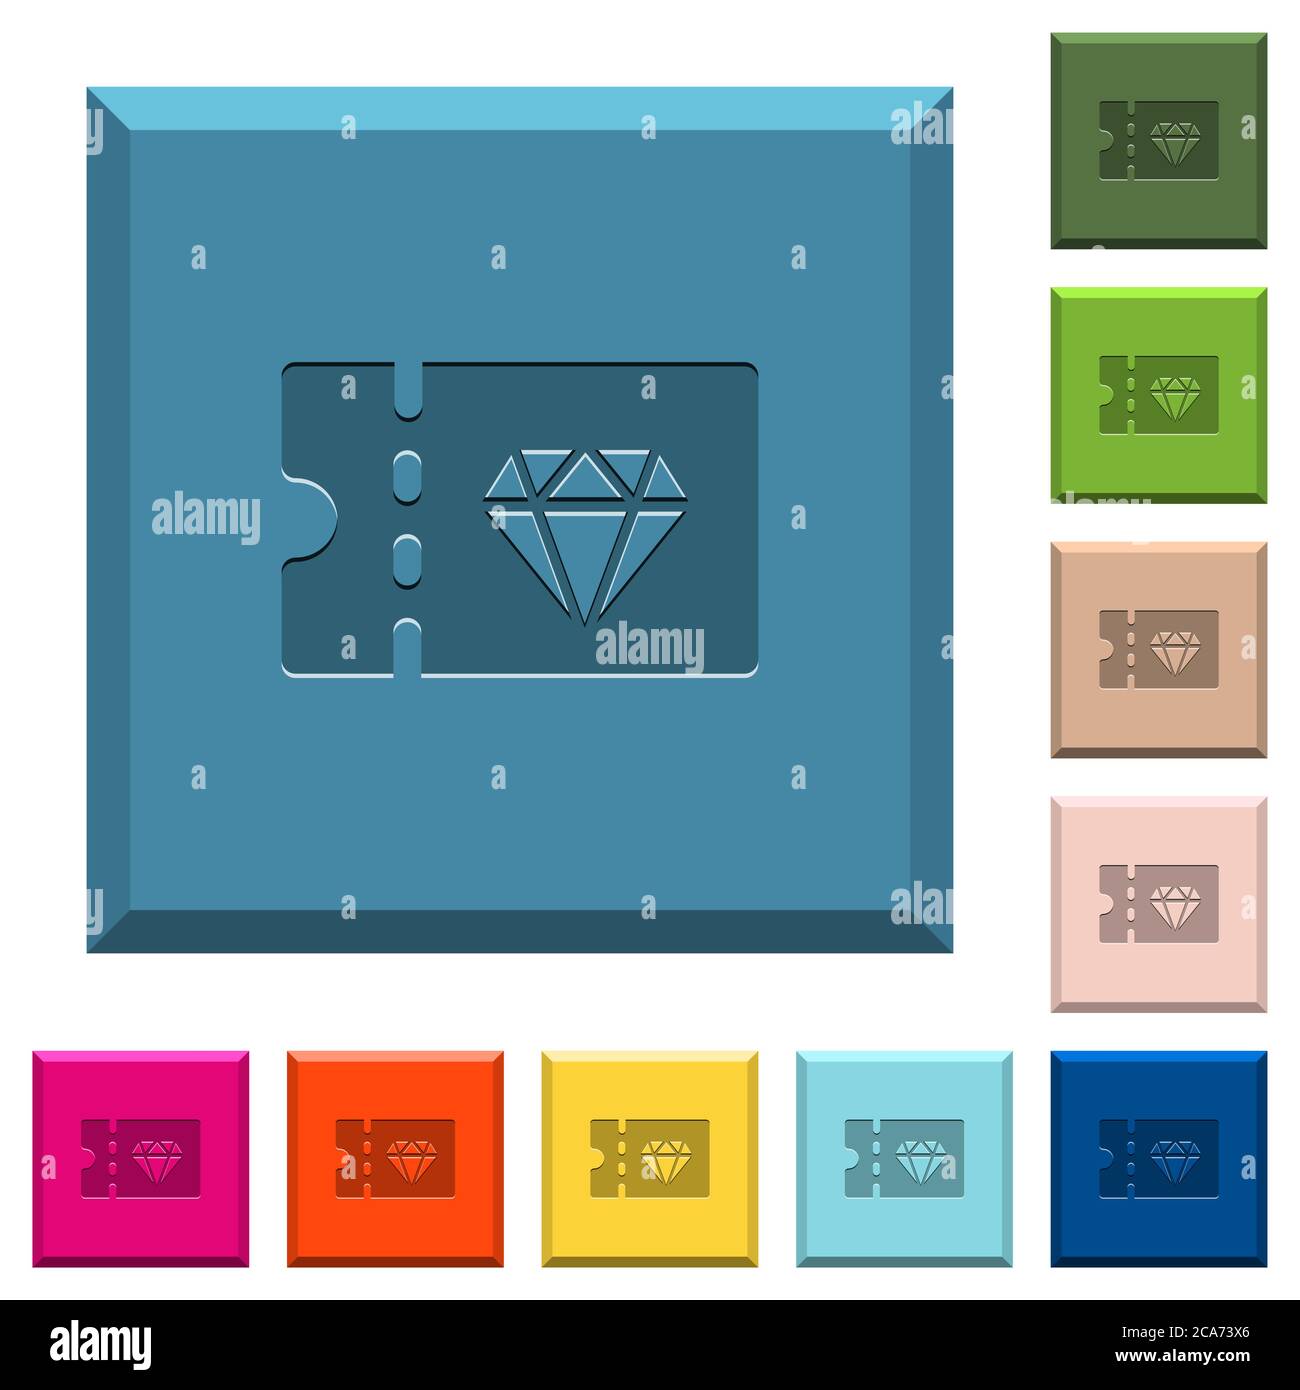 Gioielleria sconto coupon icone incise su bottoni quadrati orlati in vari colori alla moda Illustrazione Vettoriale